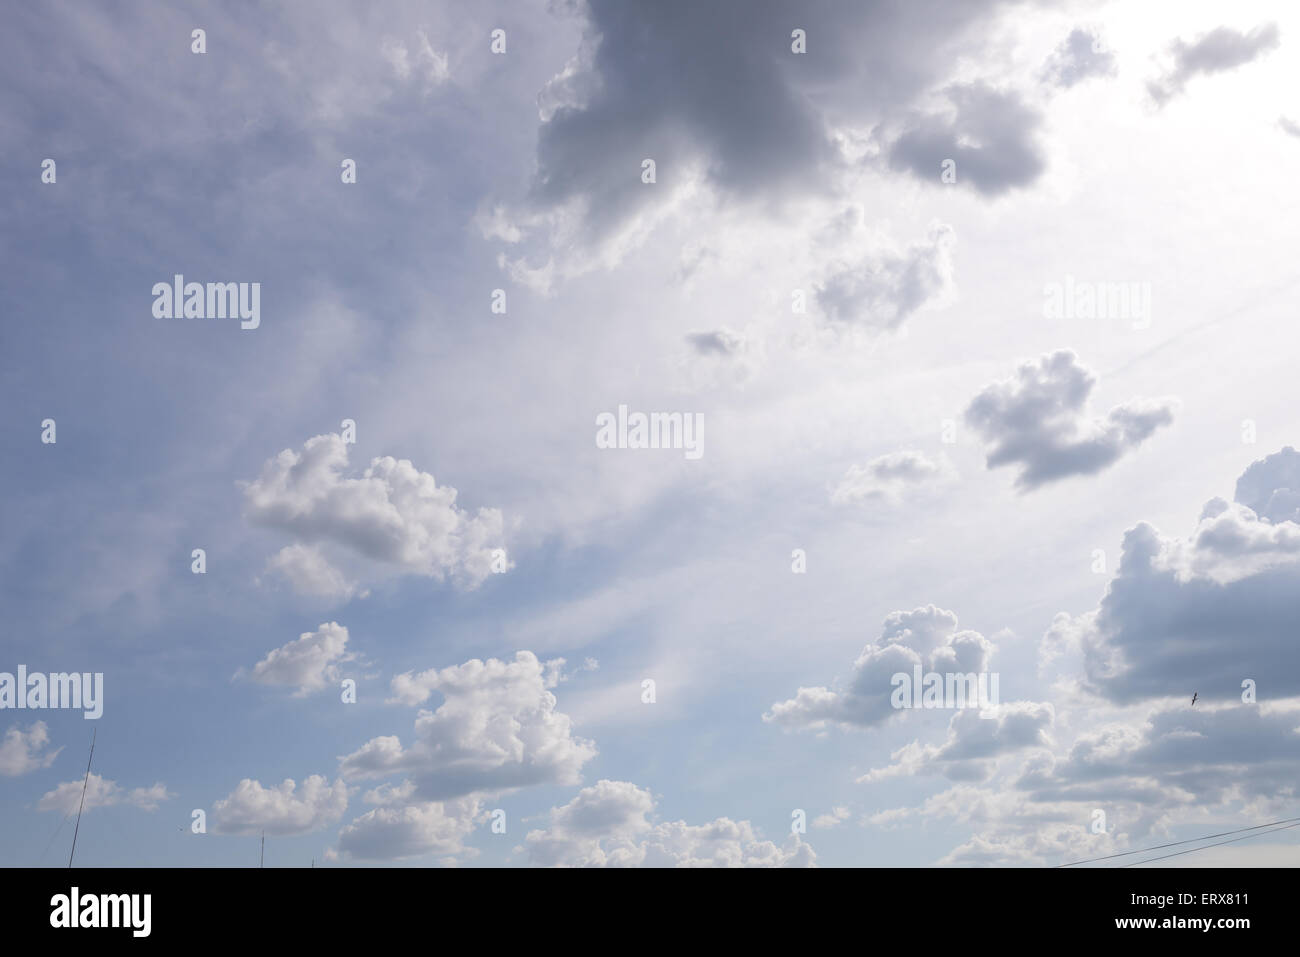 beautiful rainy clouds Stock Photo